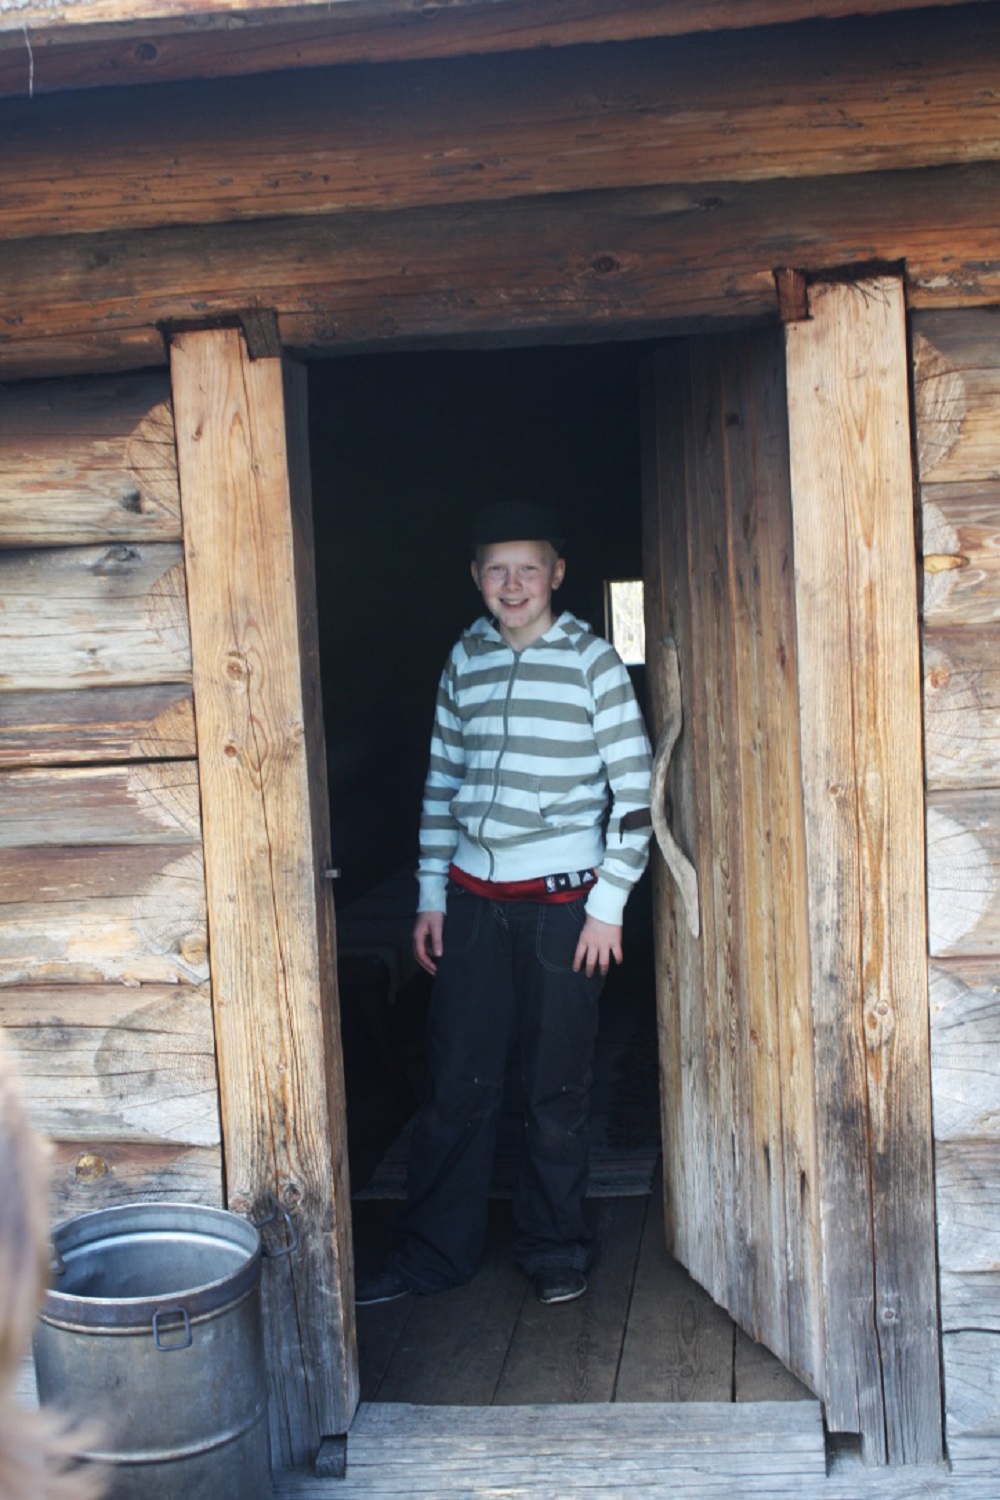 Јегор, 11-годишњи син Надежде Калмикове. Још увек је млад, али је одговоран и вешт туристички водич